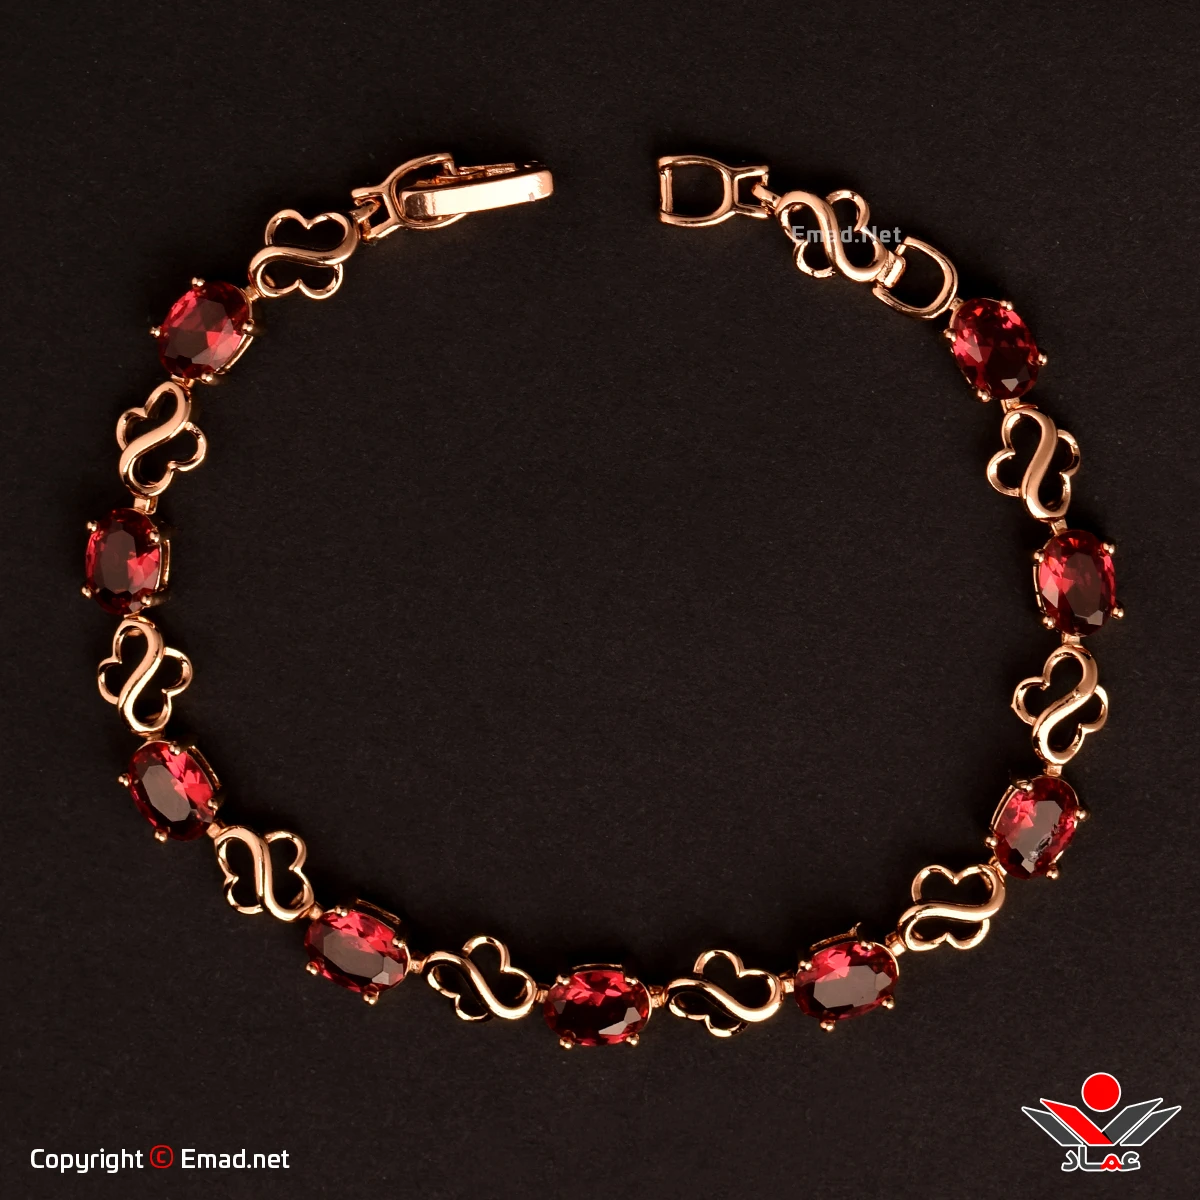 دستبند زنانه ژوپينگ با سنگ قرمز زمردي کد 206-3